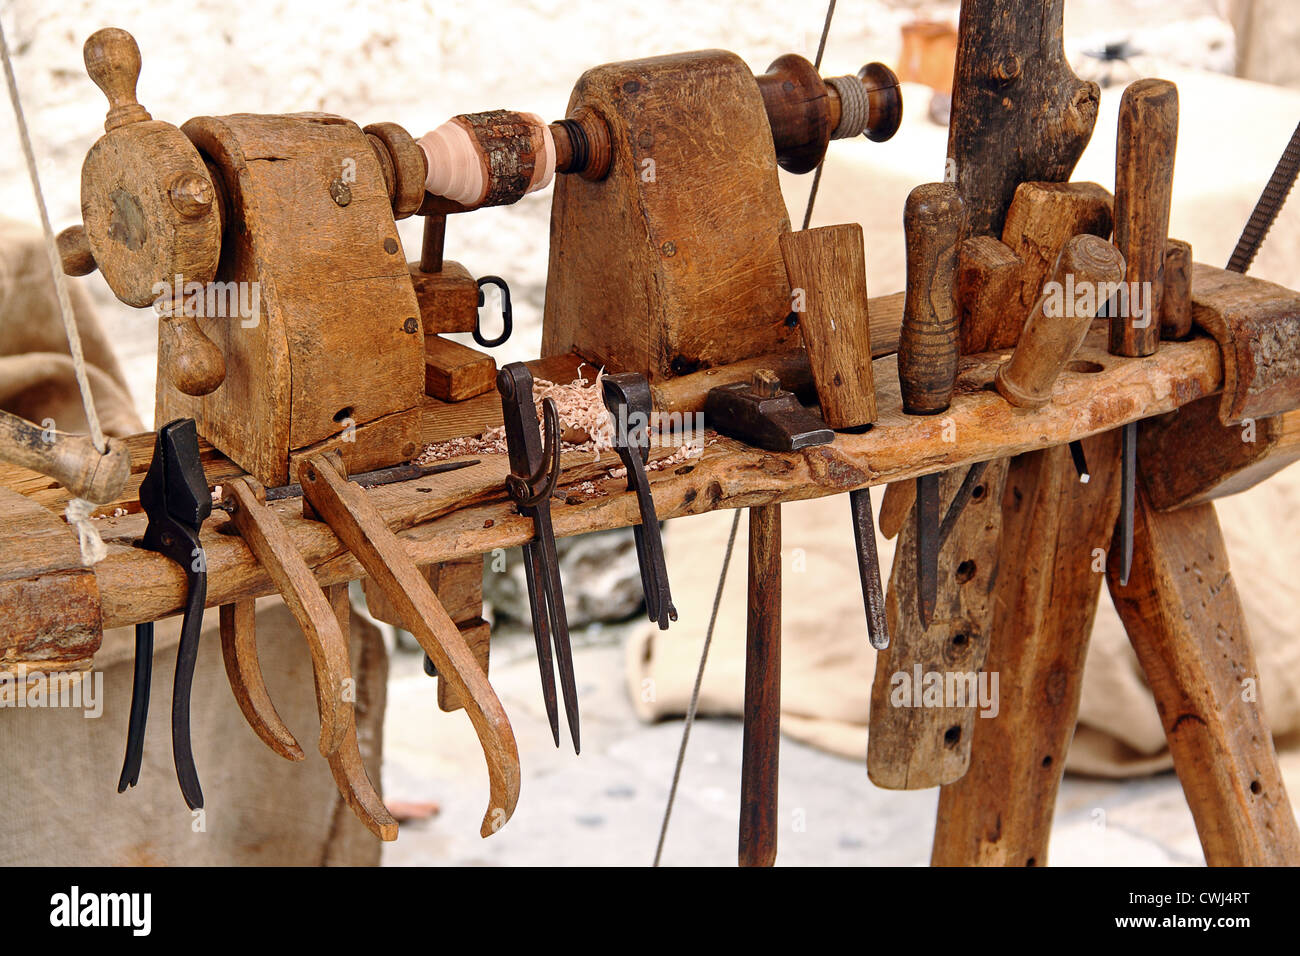 Un viejo torno con un conjunto de herramientas para trabajar la madera: martillo, cinceles, alicates Foto de stock